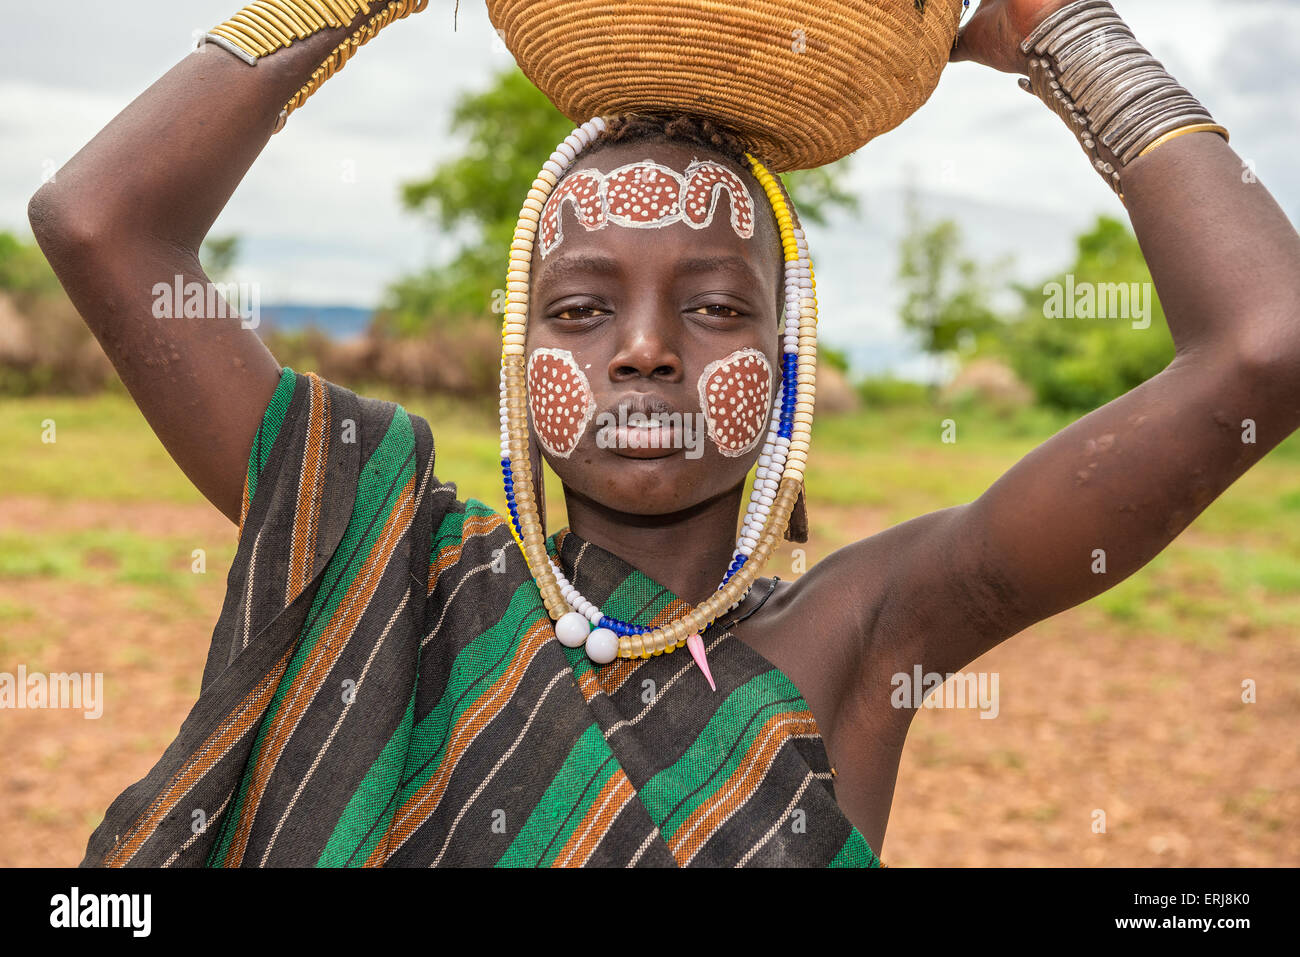 Joven de la tribu africana Mursi con joyería tradicional en el Parque Nacional de Mago, Etiopía. Foto de stock